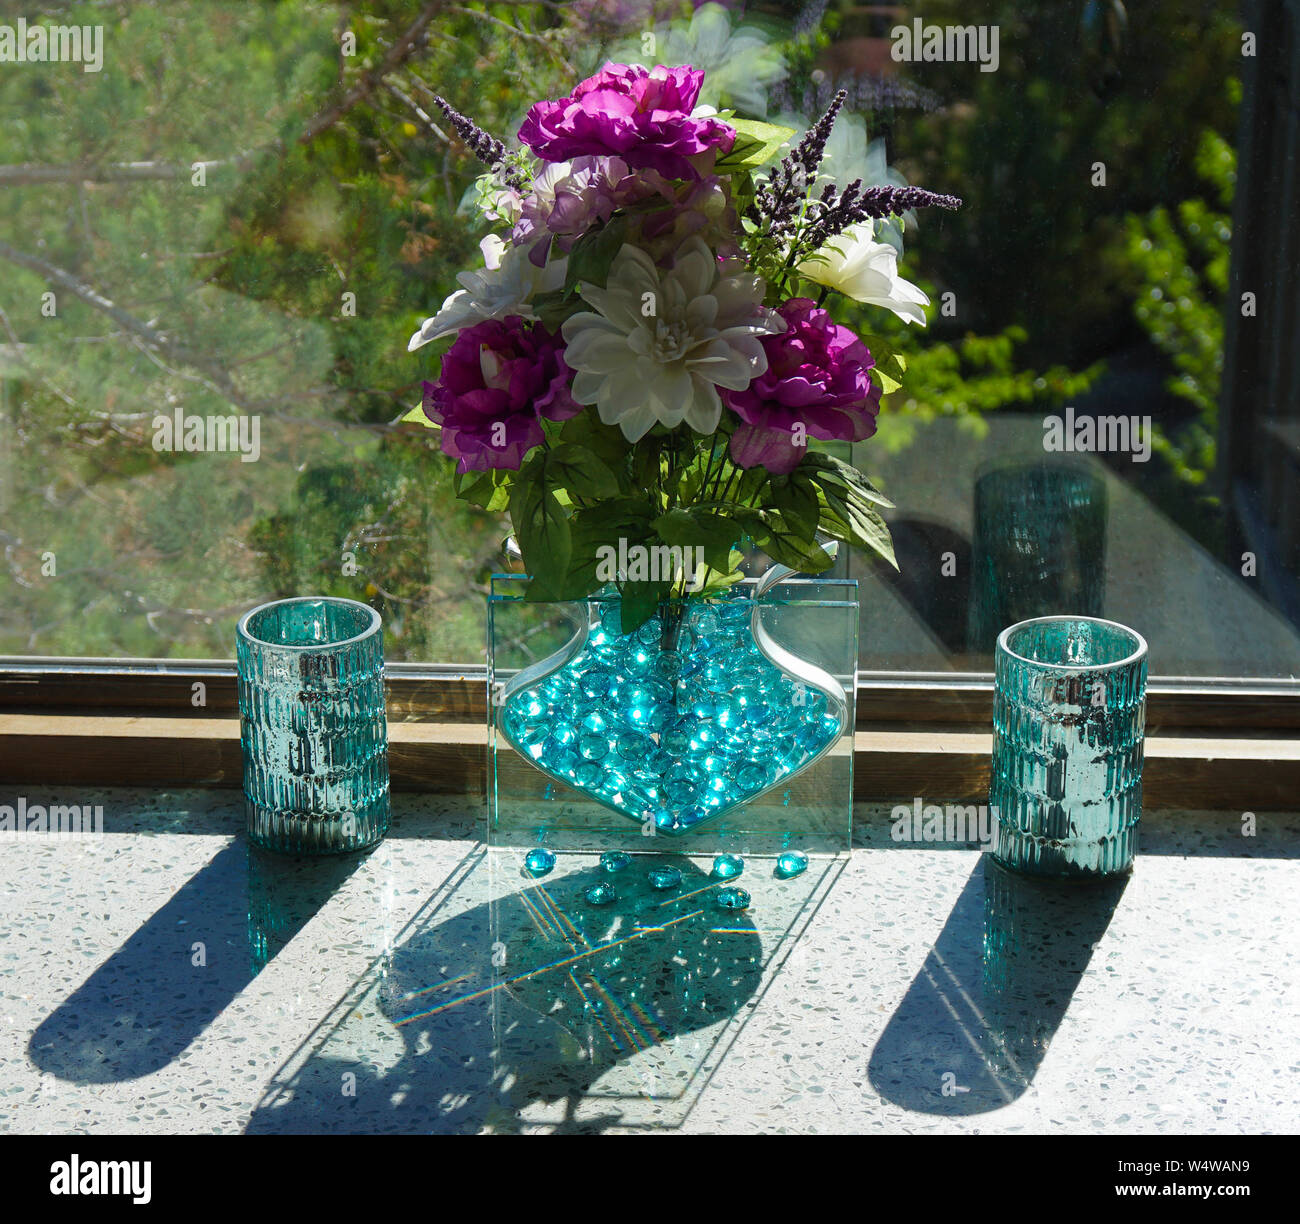 Bouquet de fleurs dans un vase en verre crée des reflets et ombres Banque D'Images